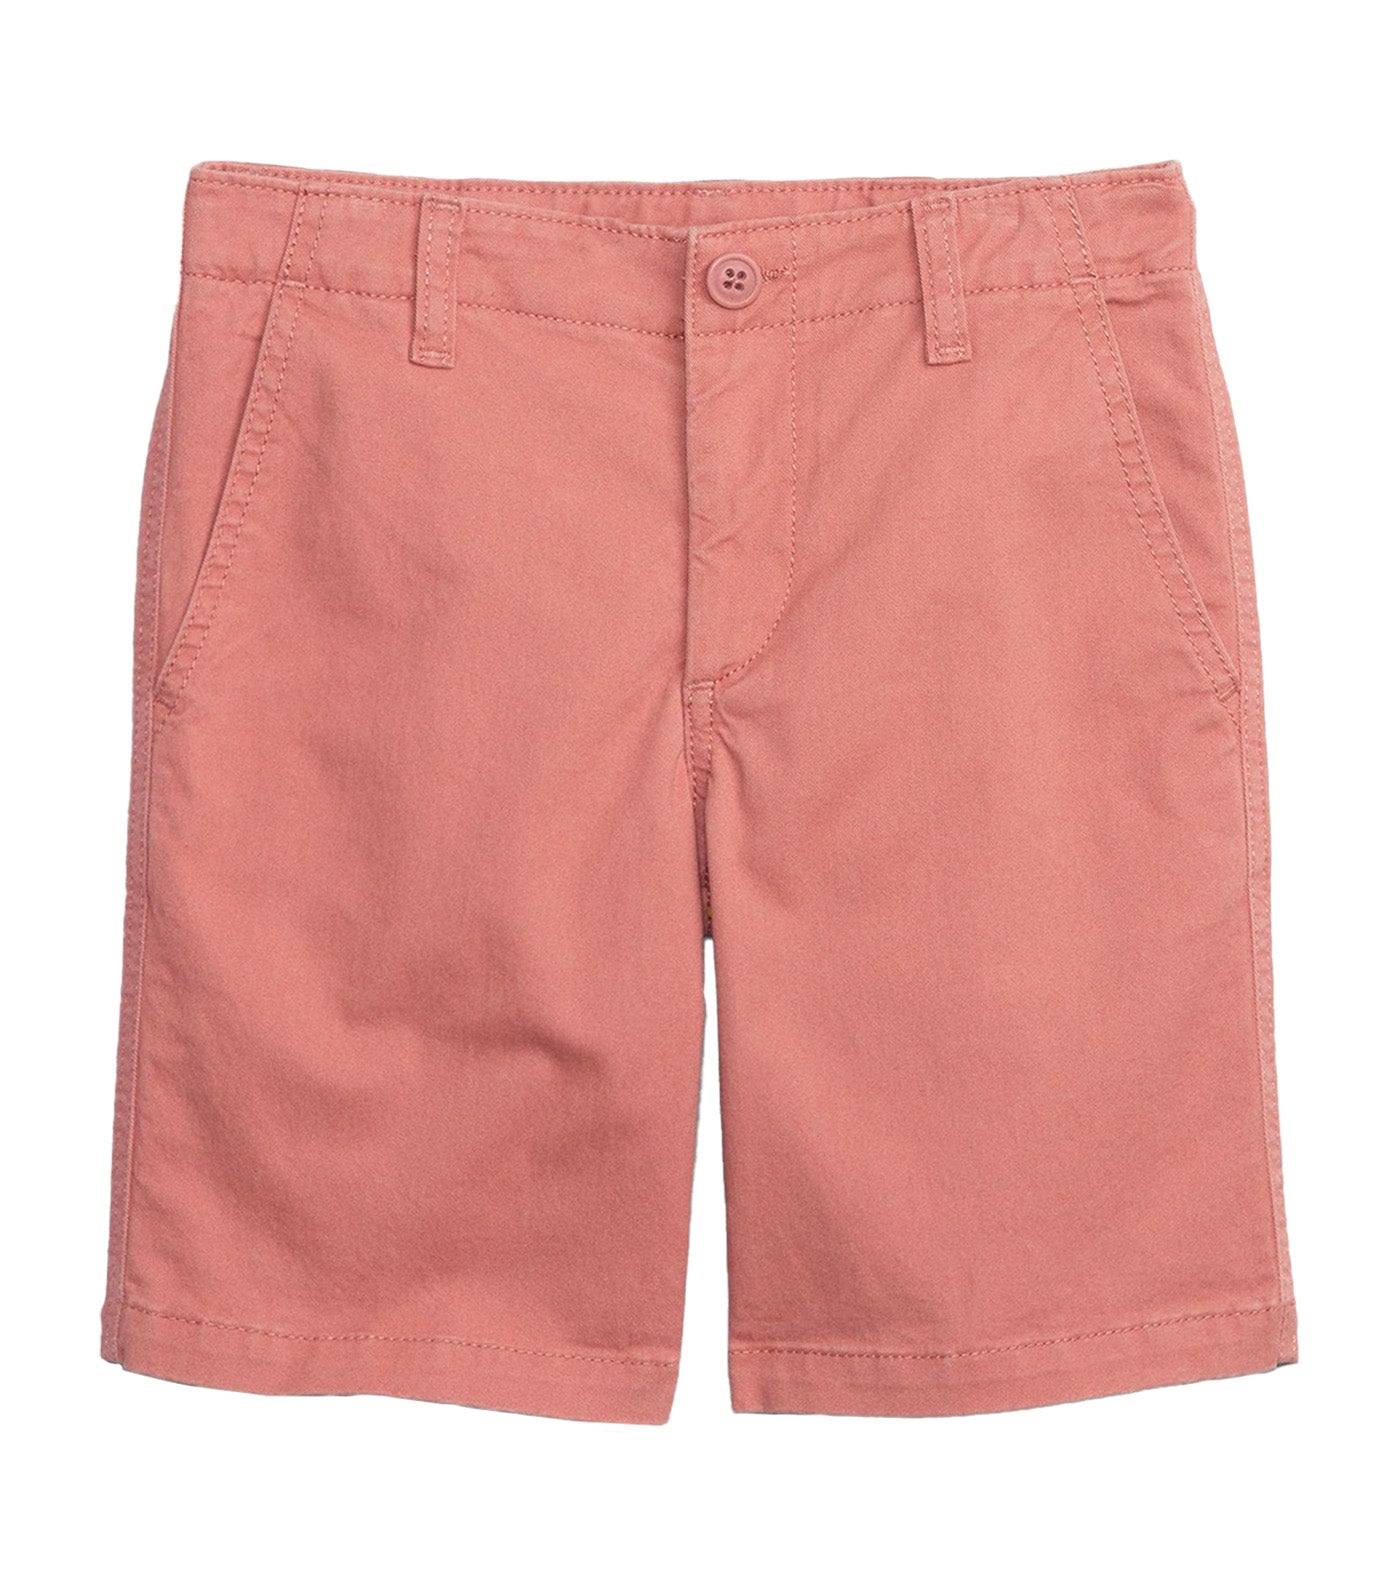 Khaki Shorts with Washwell - Desert Sand